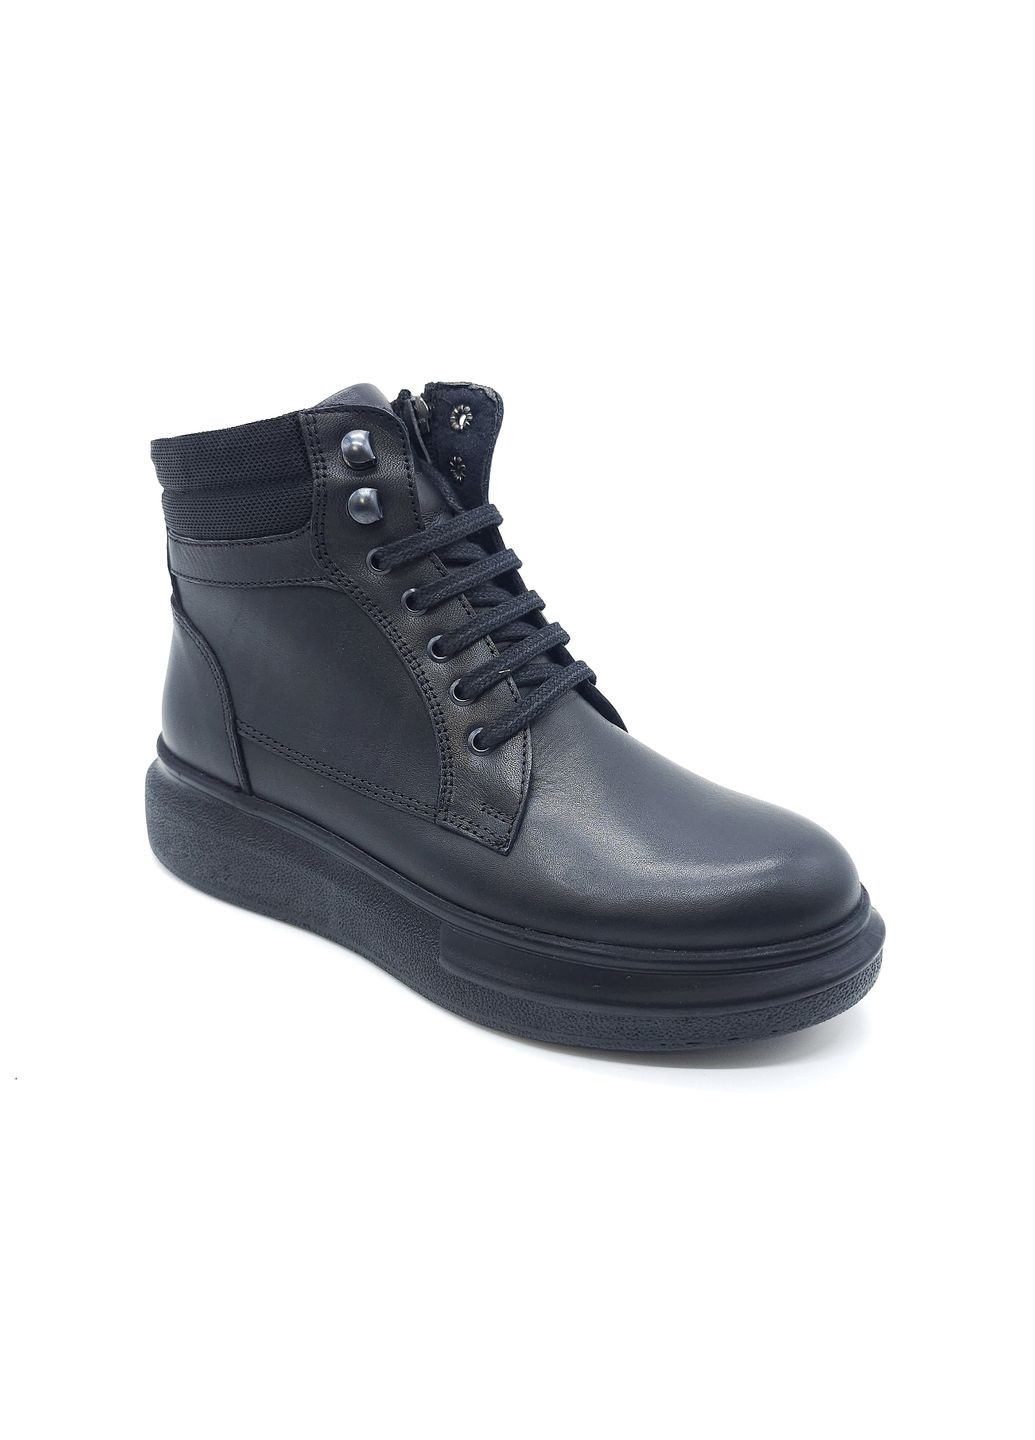 Осенние женские ботинки черные кожаные at-13-2 23,5 см (р) ALTURA